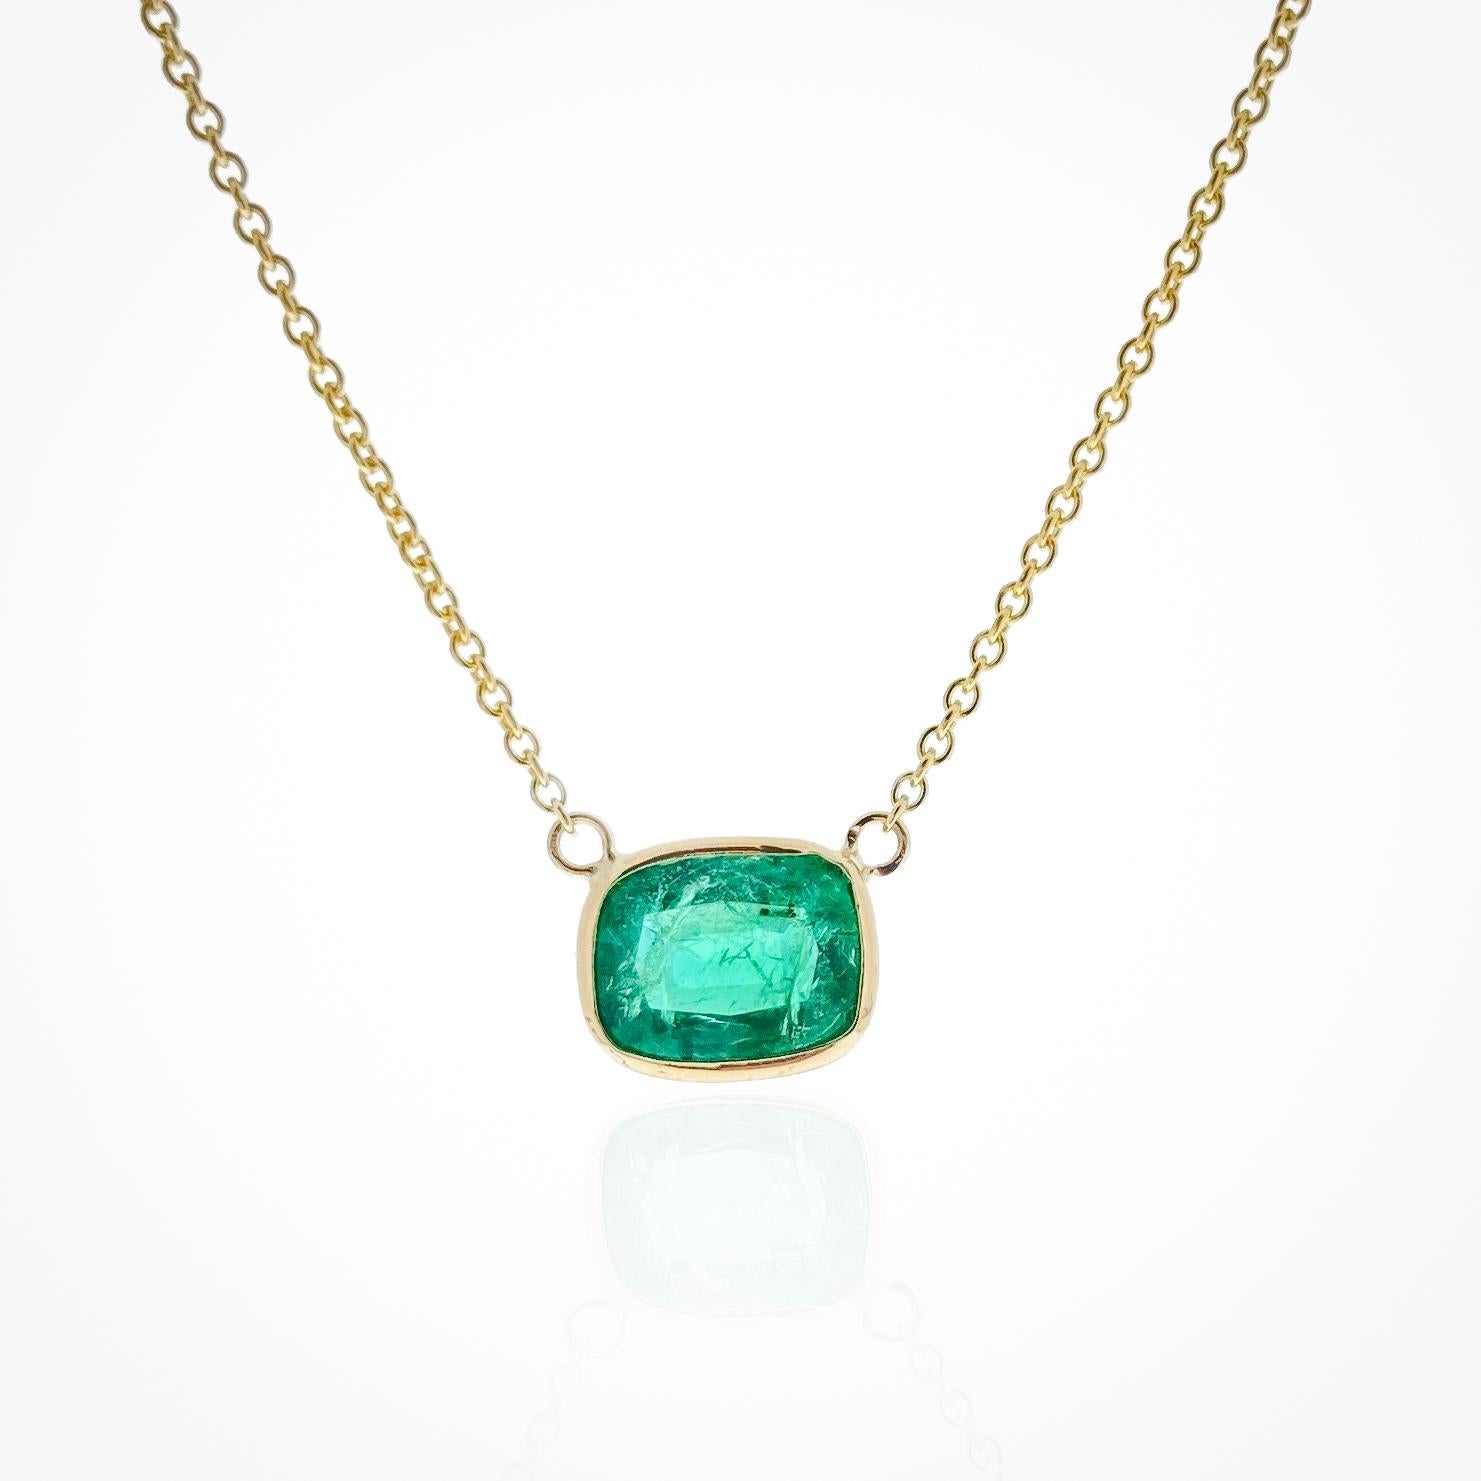 Diese Halskette besteht aus einem grünen Smaragd im Kissenschliff mit einem Gewicht von 1,96 Karat, gefasst in 14 Karat Gelbgold (YG). Smaragde werden wegen ihrer satten grünen Farbe sehr geschätzt, und der Kissenschliff ist für sein zeitloses und